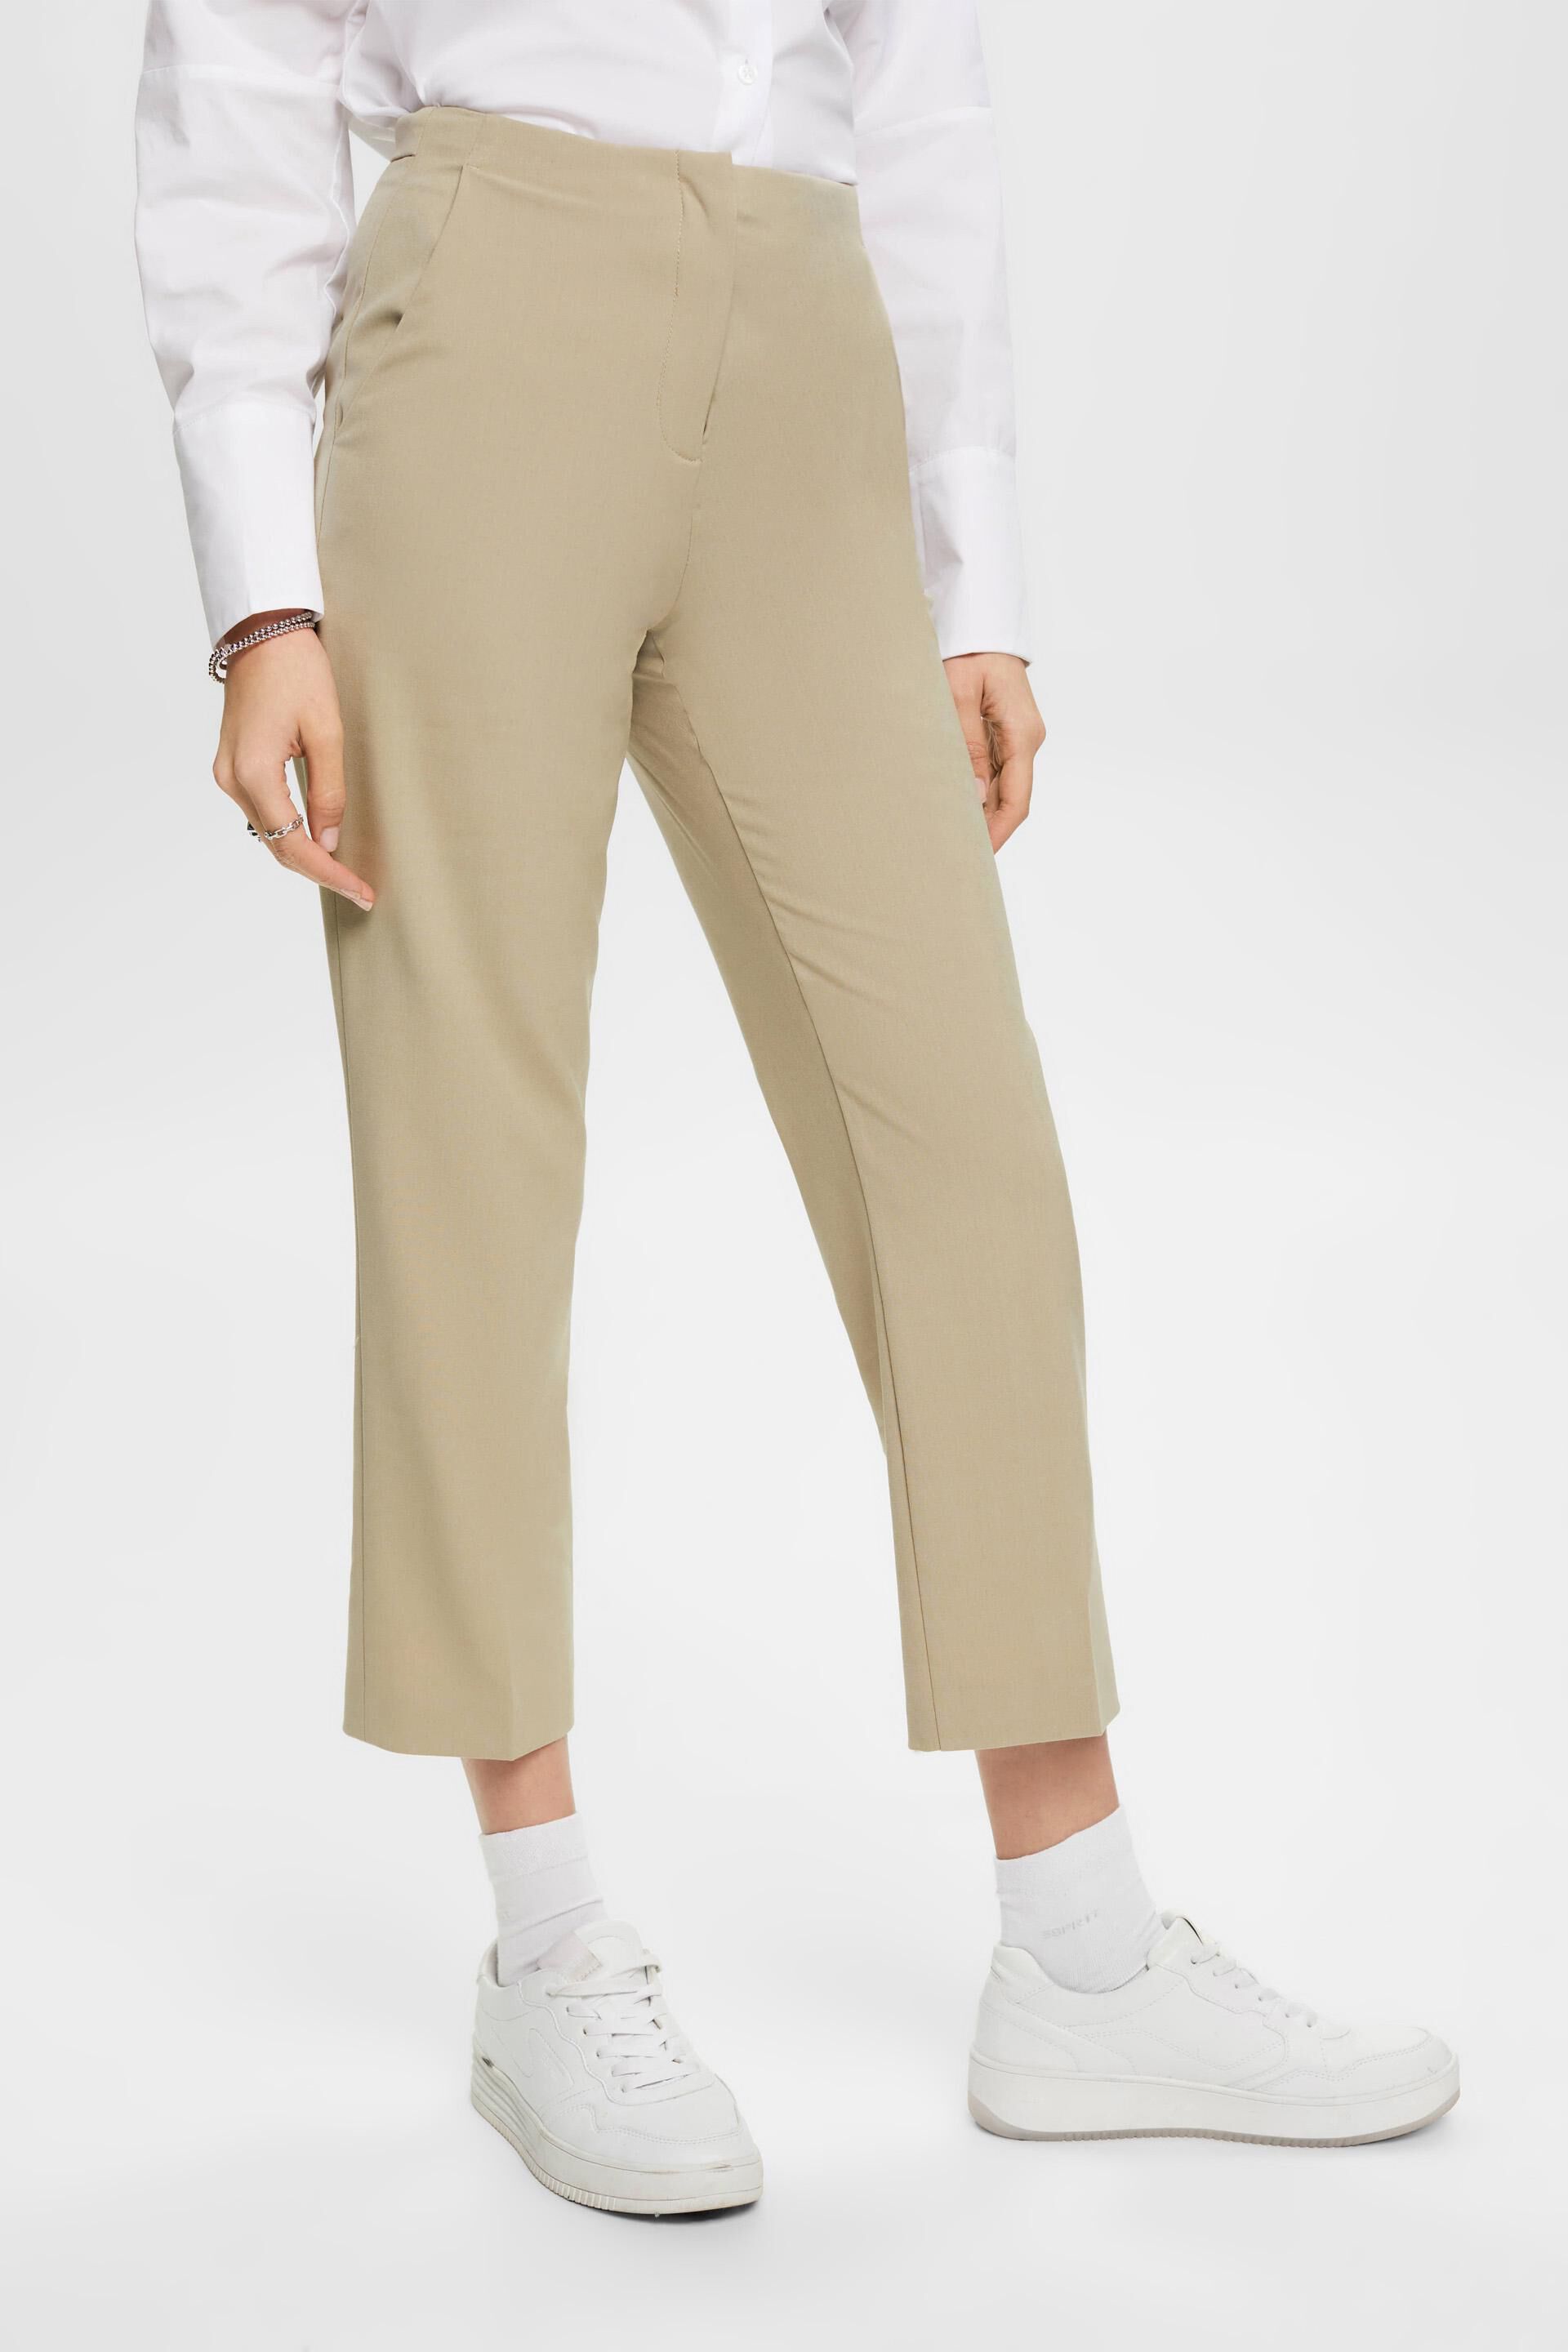 Buy Women Navy Solid Business Casual Regular Fit Trousers Online - 514412 |  Van Heusen